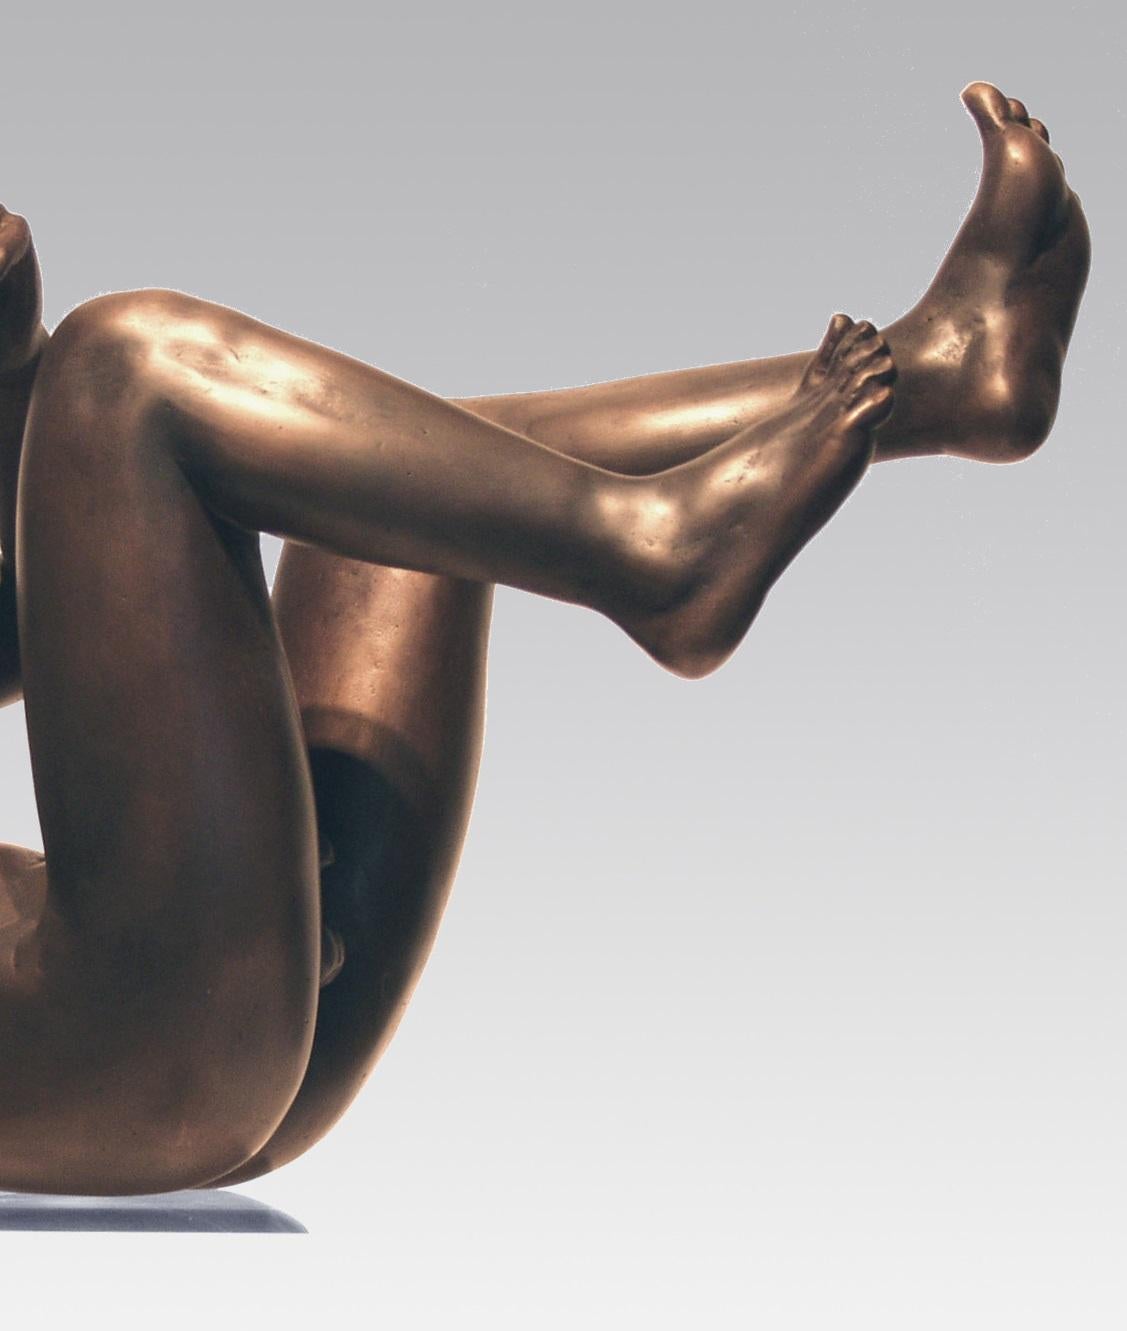 Vallende Man Falling Man Bronze Skulptur Zeitgenössische
Die Statuen von Erwin Meijer tragen eine erkennbare, persönliche Handschrift.
Sie atmen die Atmosphäre eines erzählenden Gedichts, in dem der Leser nicht nur dem Künstler, sondern auch sich